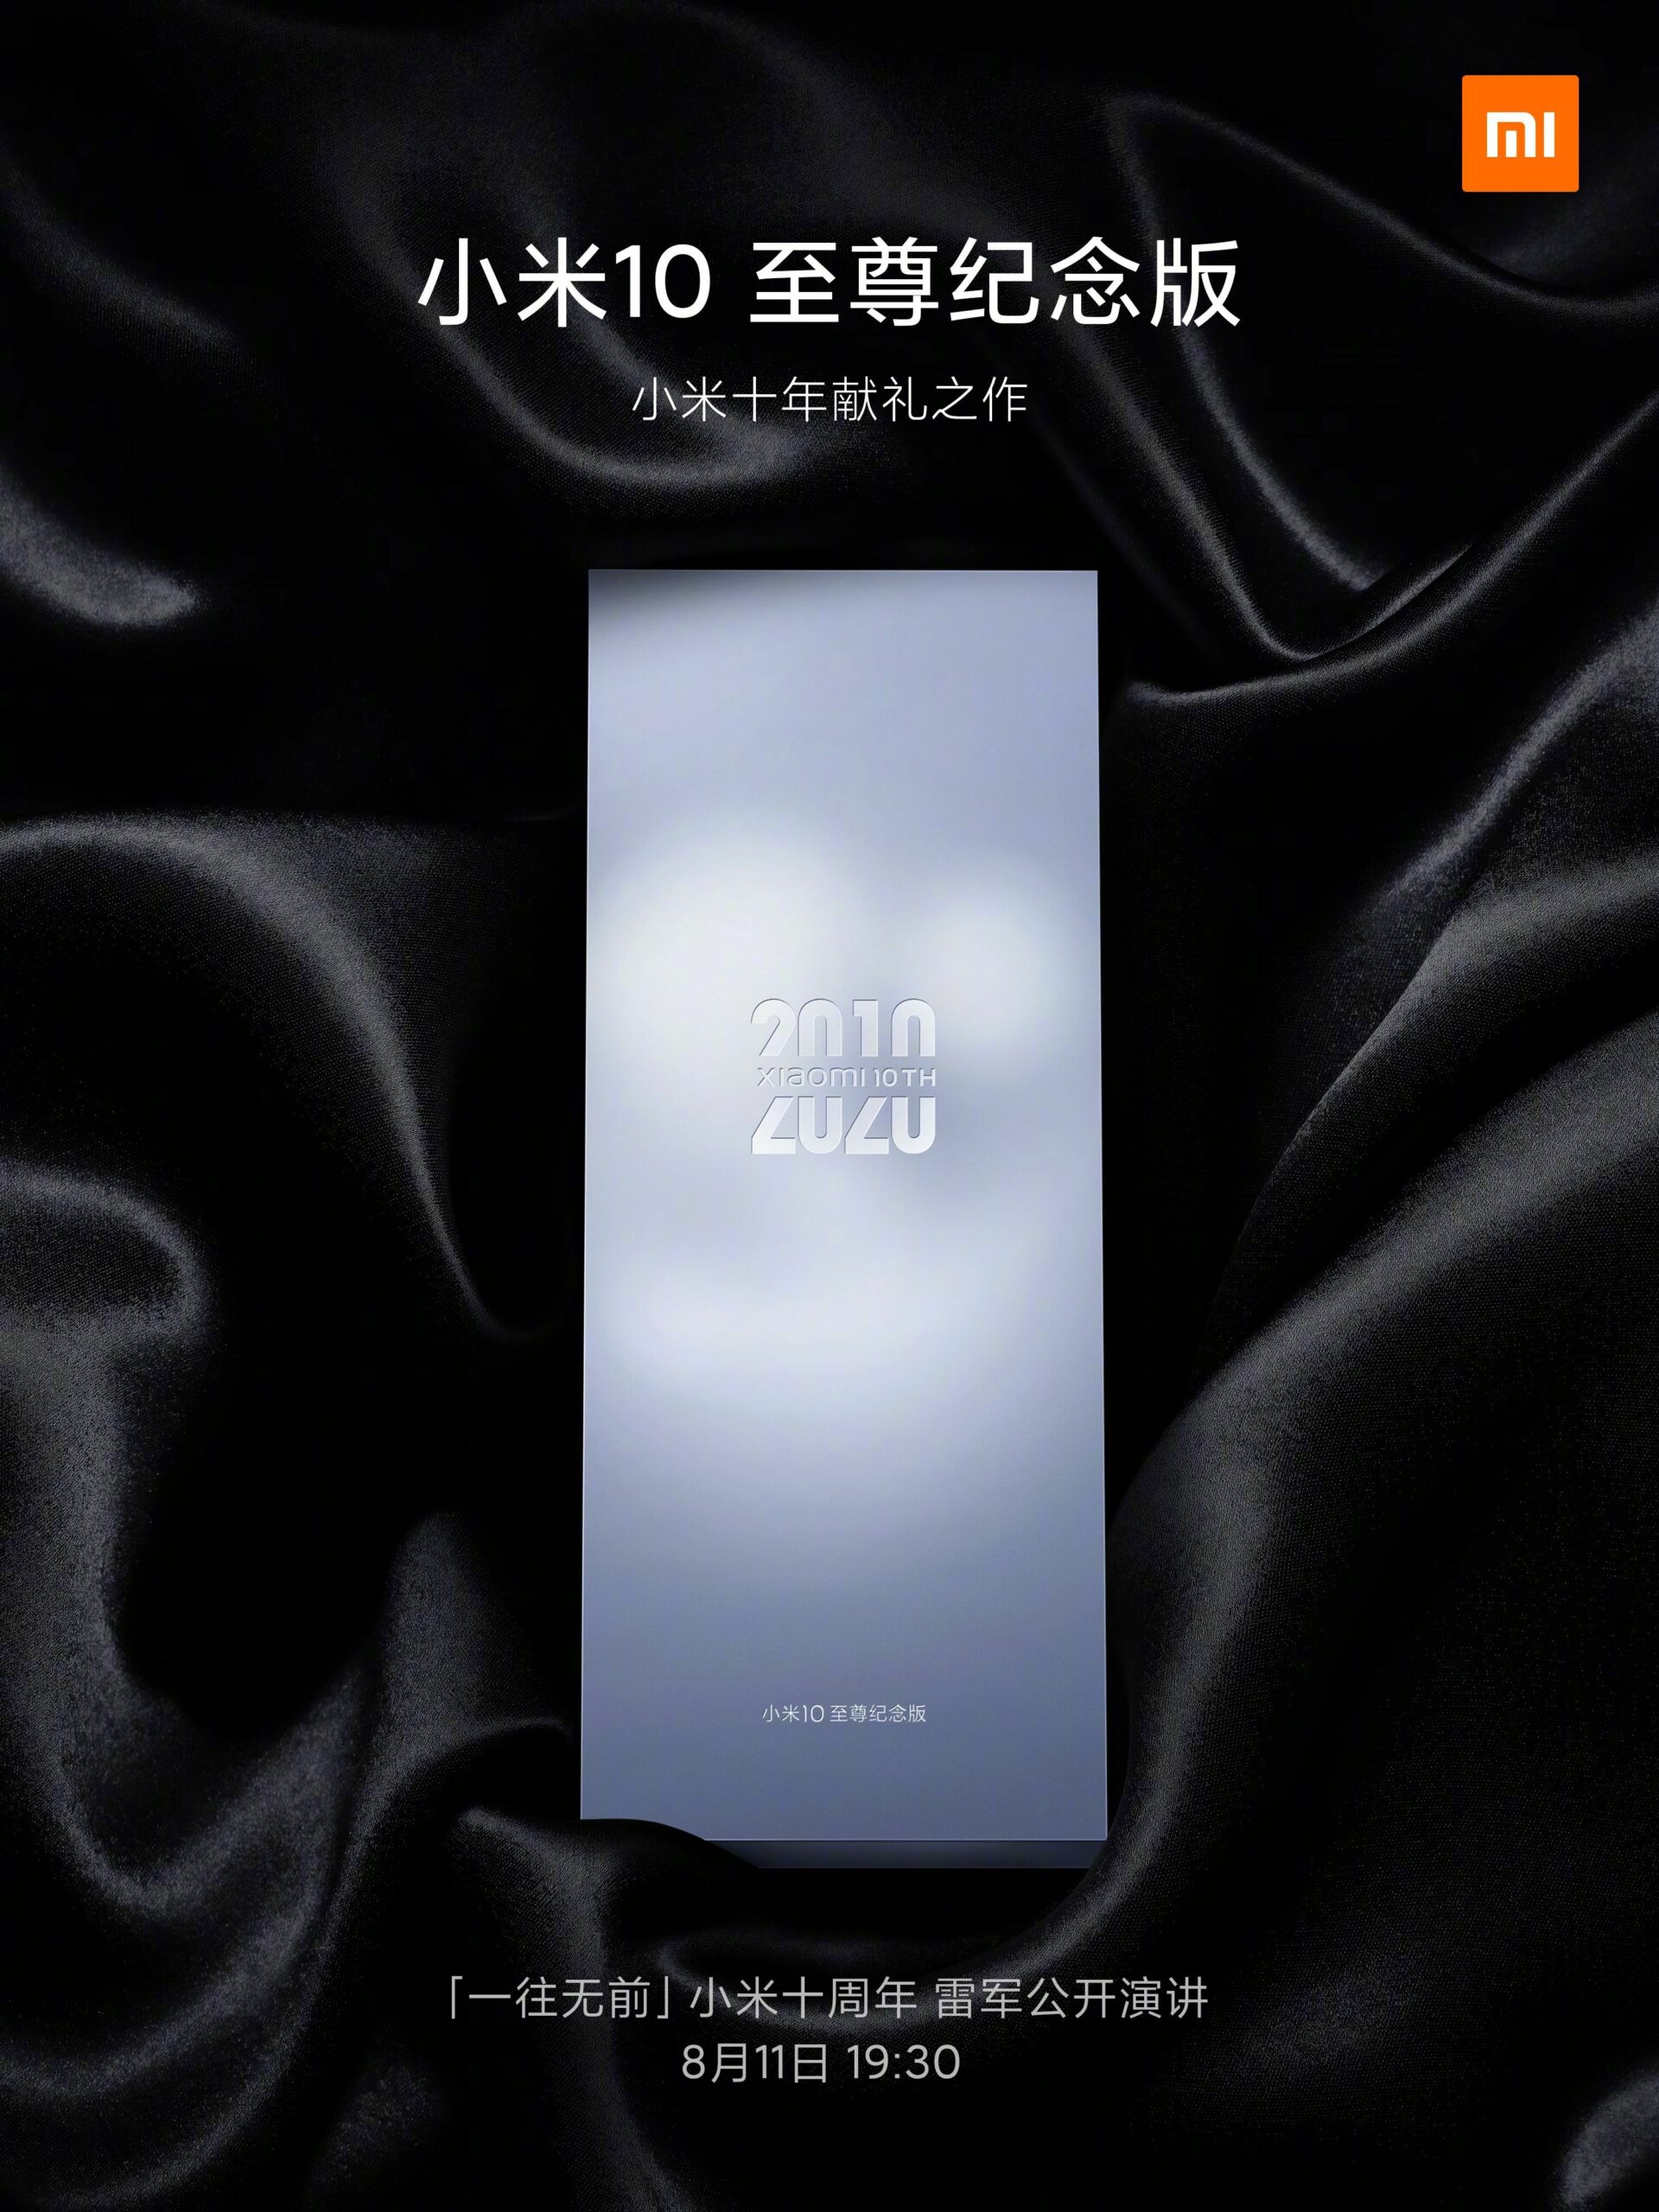 Pamätné vydanie Xiaomi Mi 10 Extreme 11. augusta Spustenie